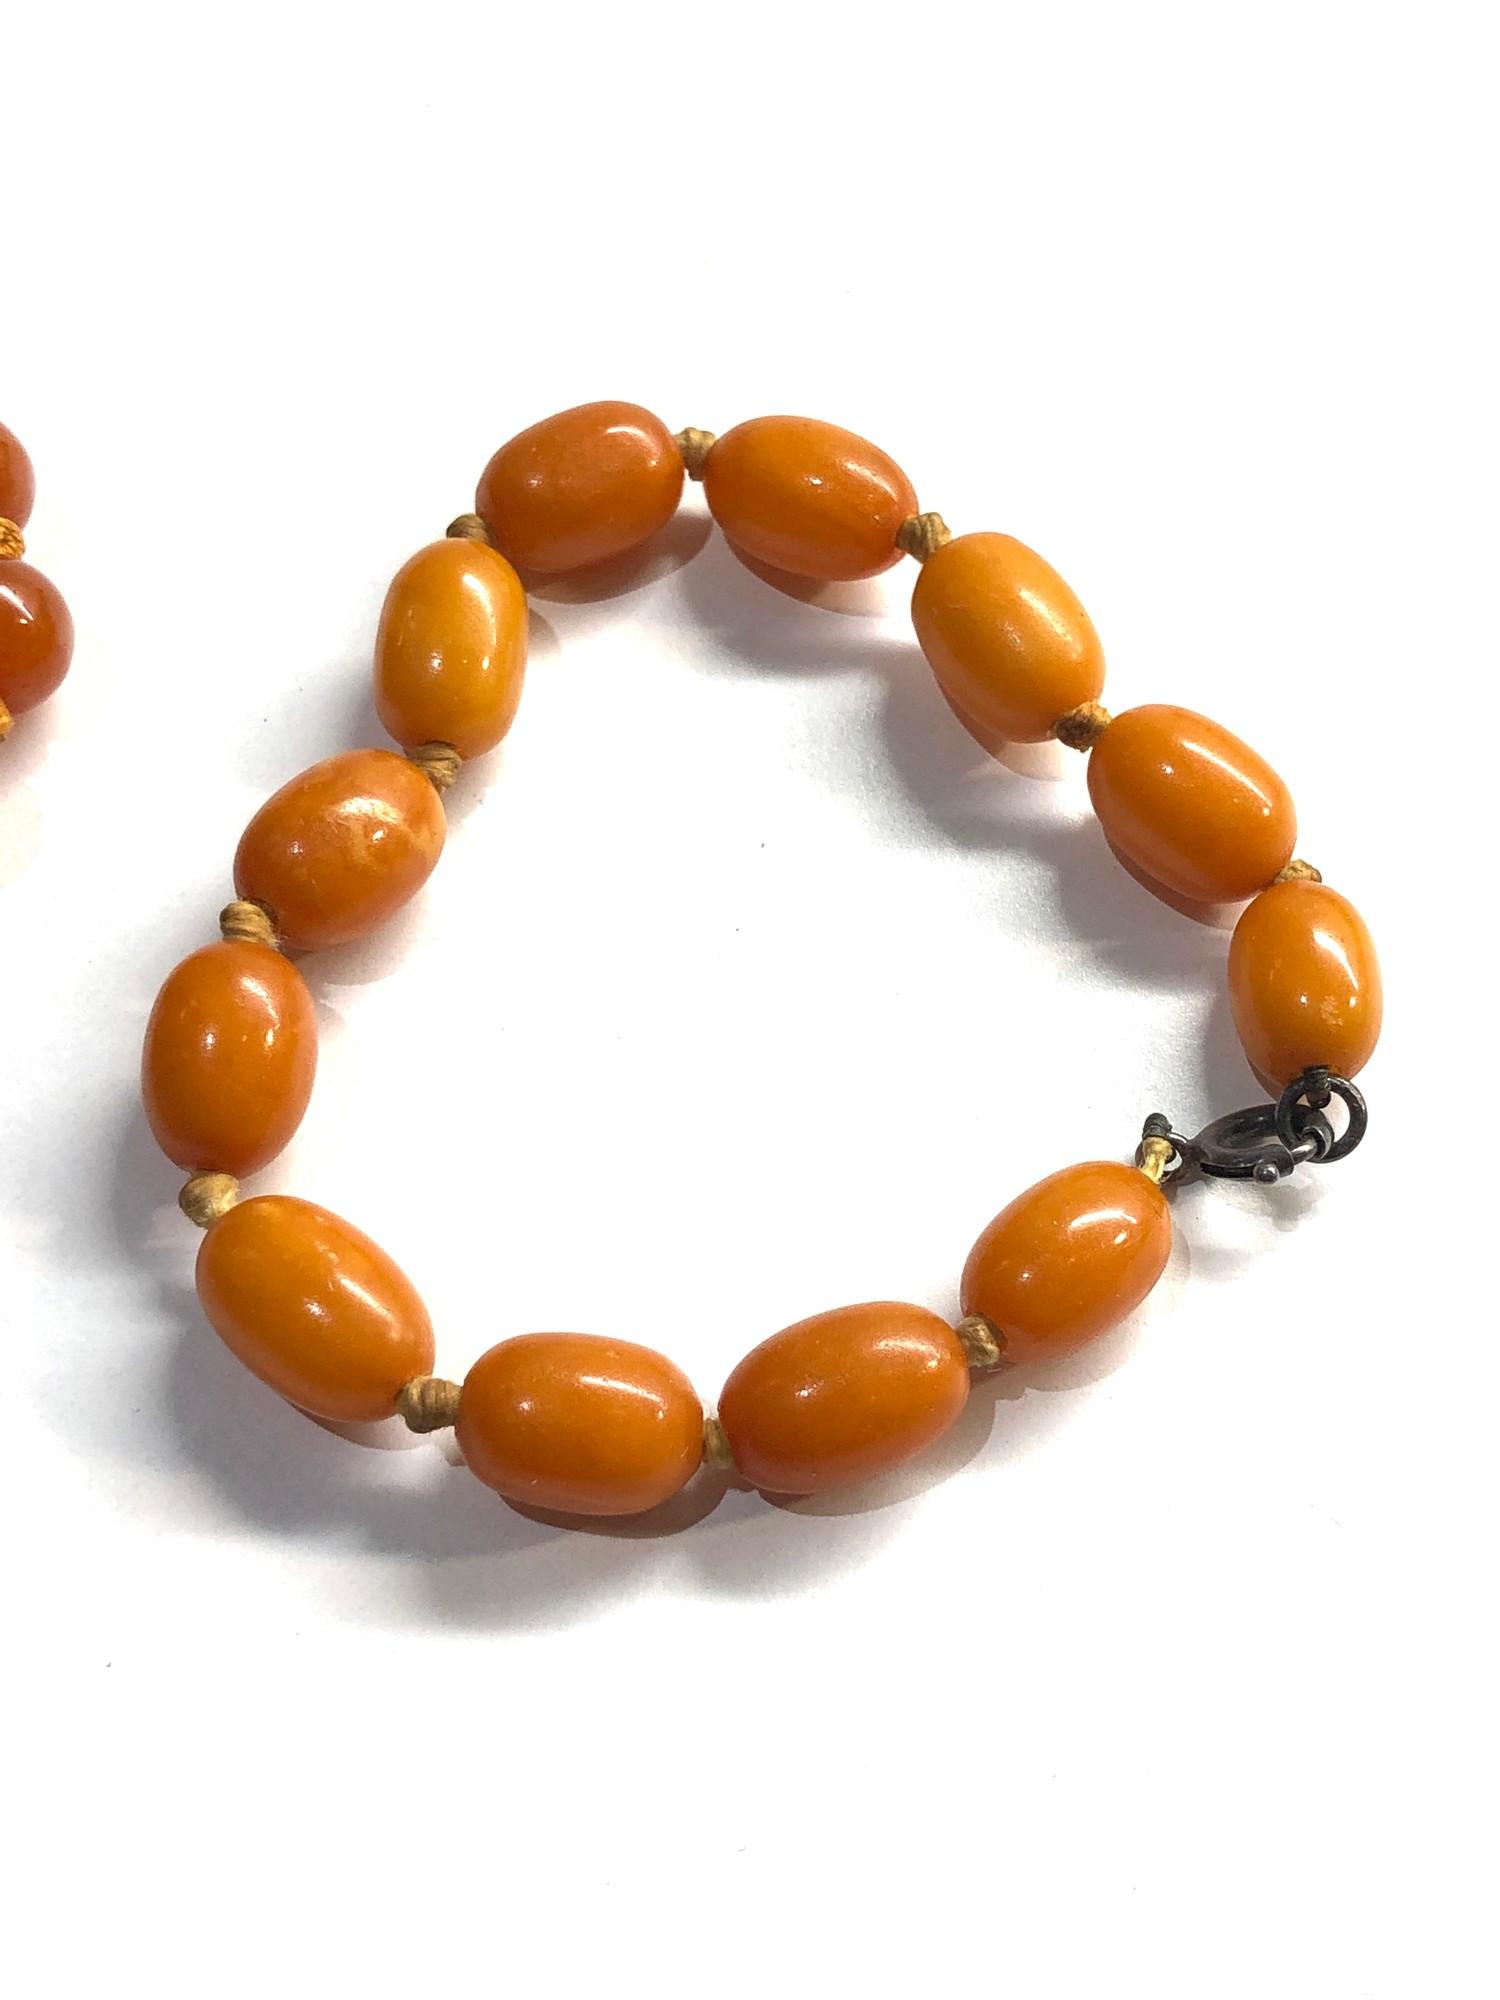 2 butterscotch amber bracelets 14.5g - Image 3 of 3